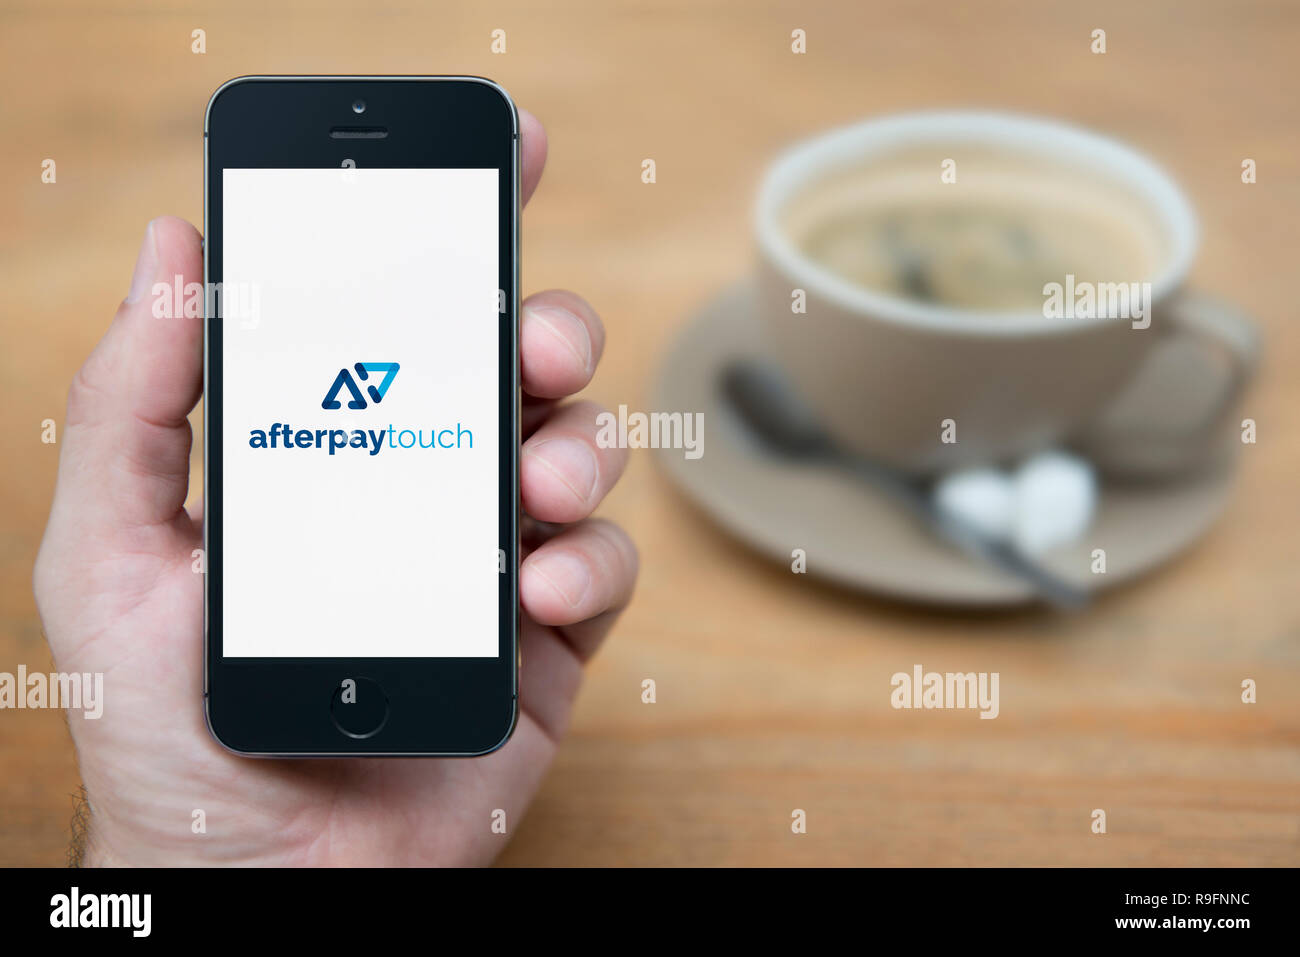 Un uomo guarda al suo iPhone che visualizza il Afterpay Touch logo (solo uso editoriale). Foto Stock